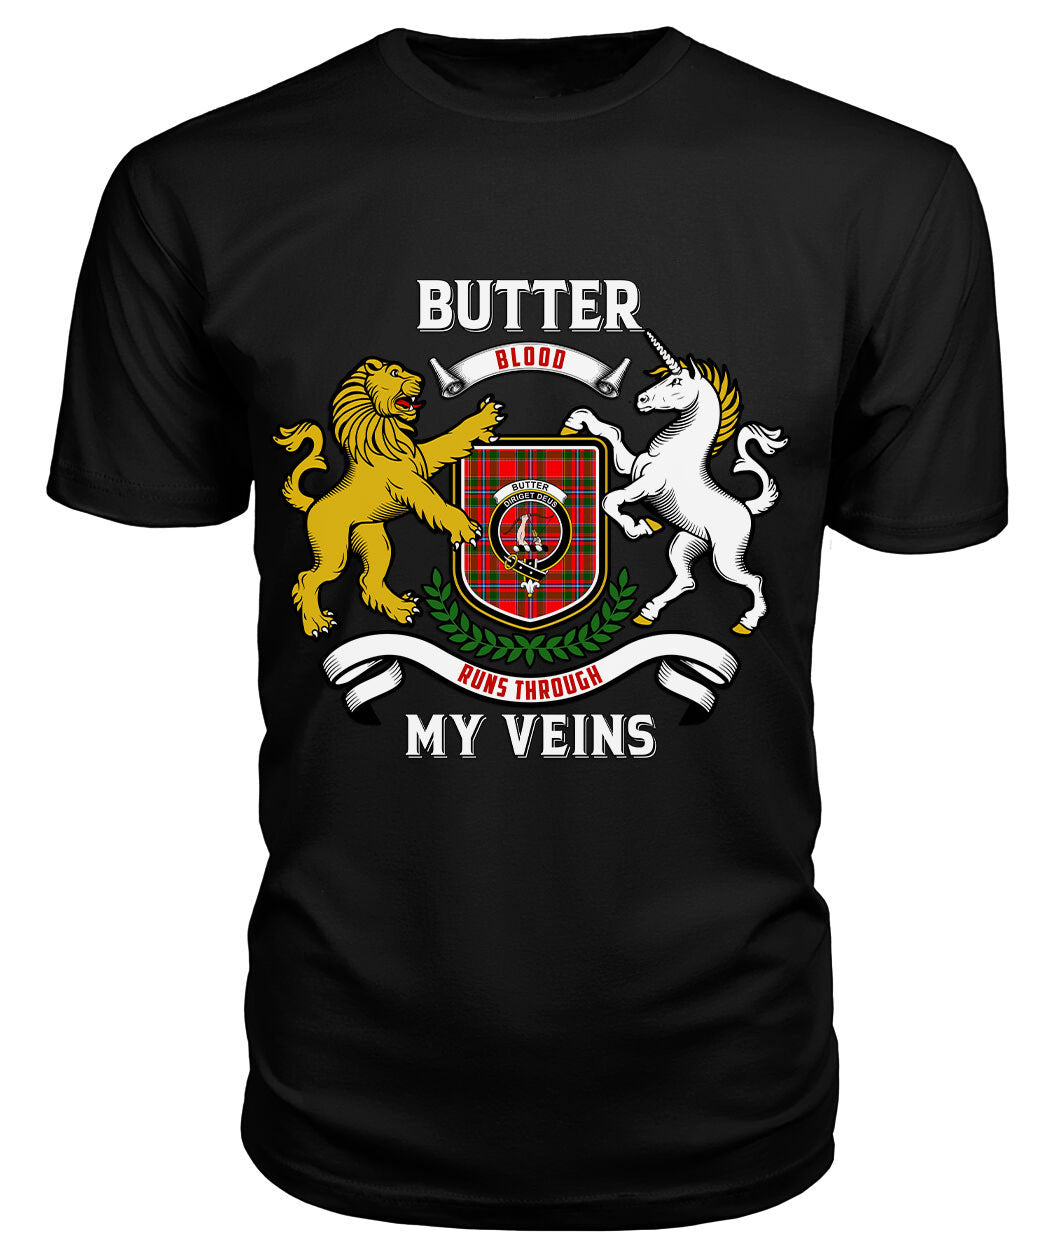 Butter Tartan Crest 2D T-shirt - Blood Runs Through My Veins Style